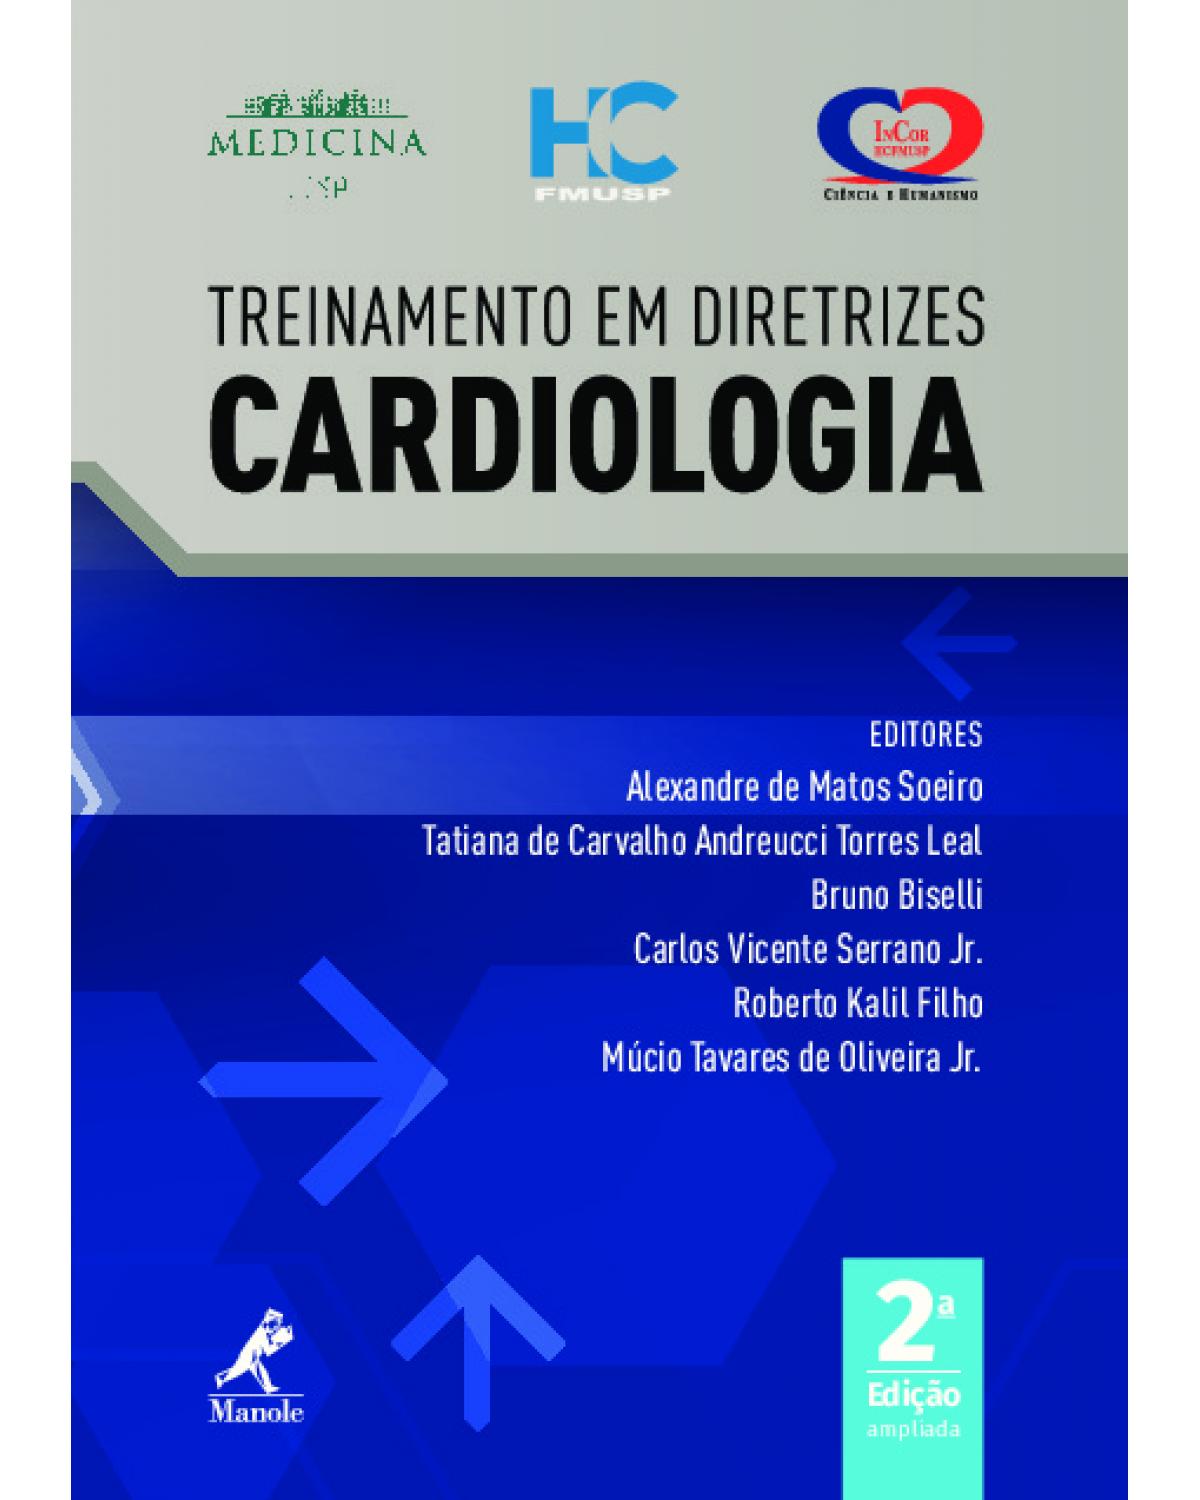 Treinamento em diretrizes cardiologia - 2ª Edição | 2019